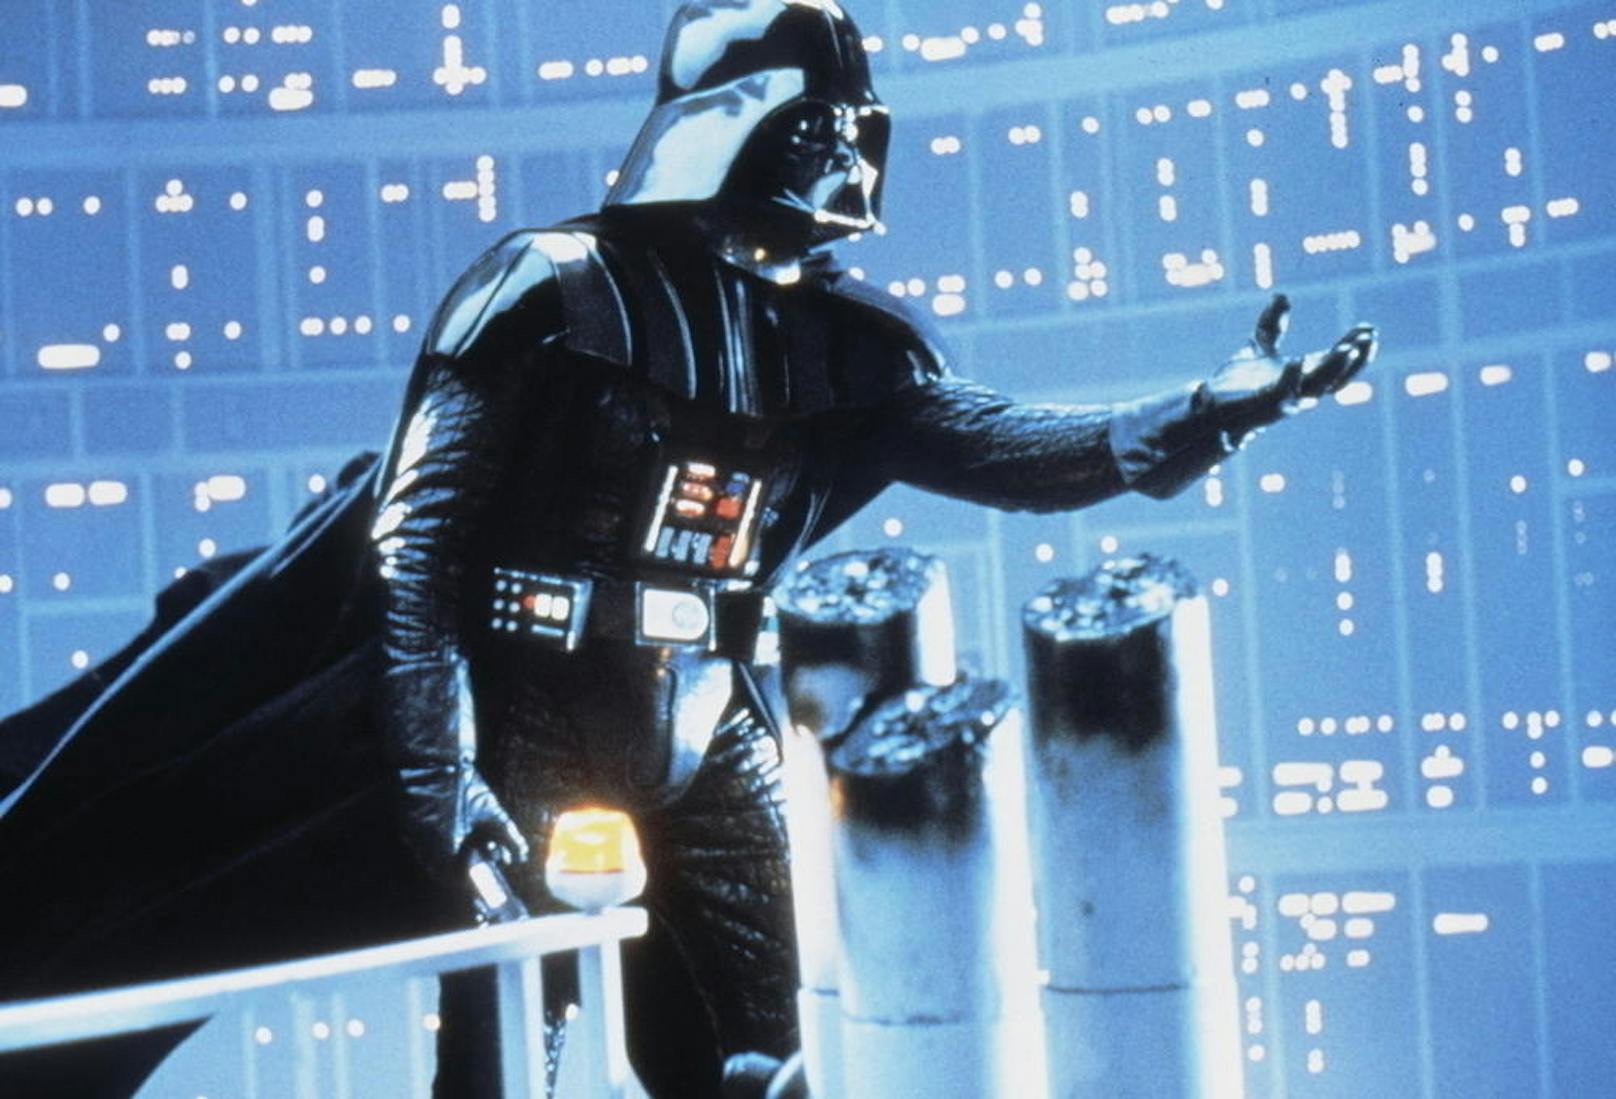 Darth Vader in "Das Imperium schlägt zurück".